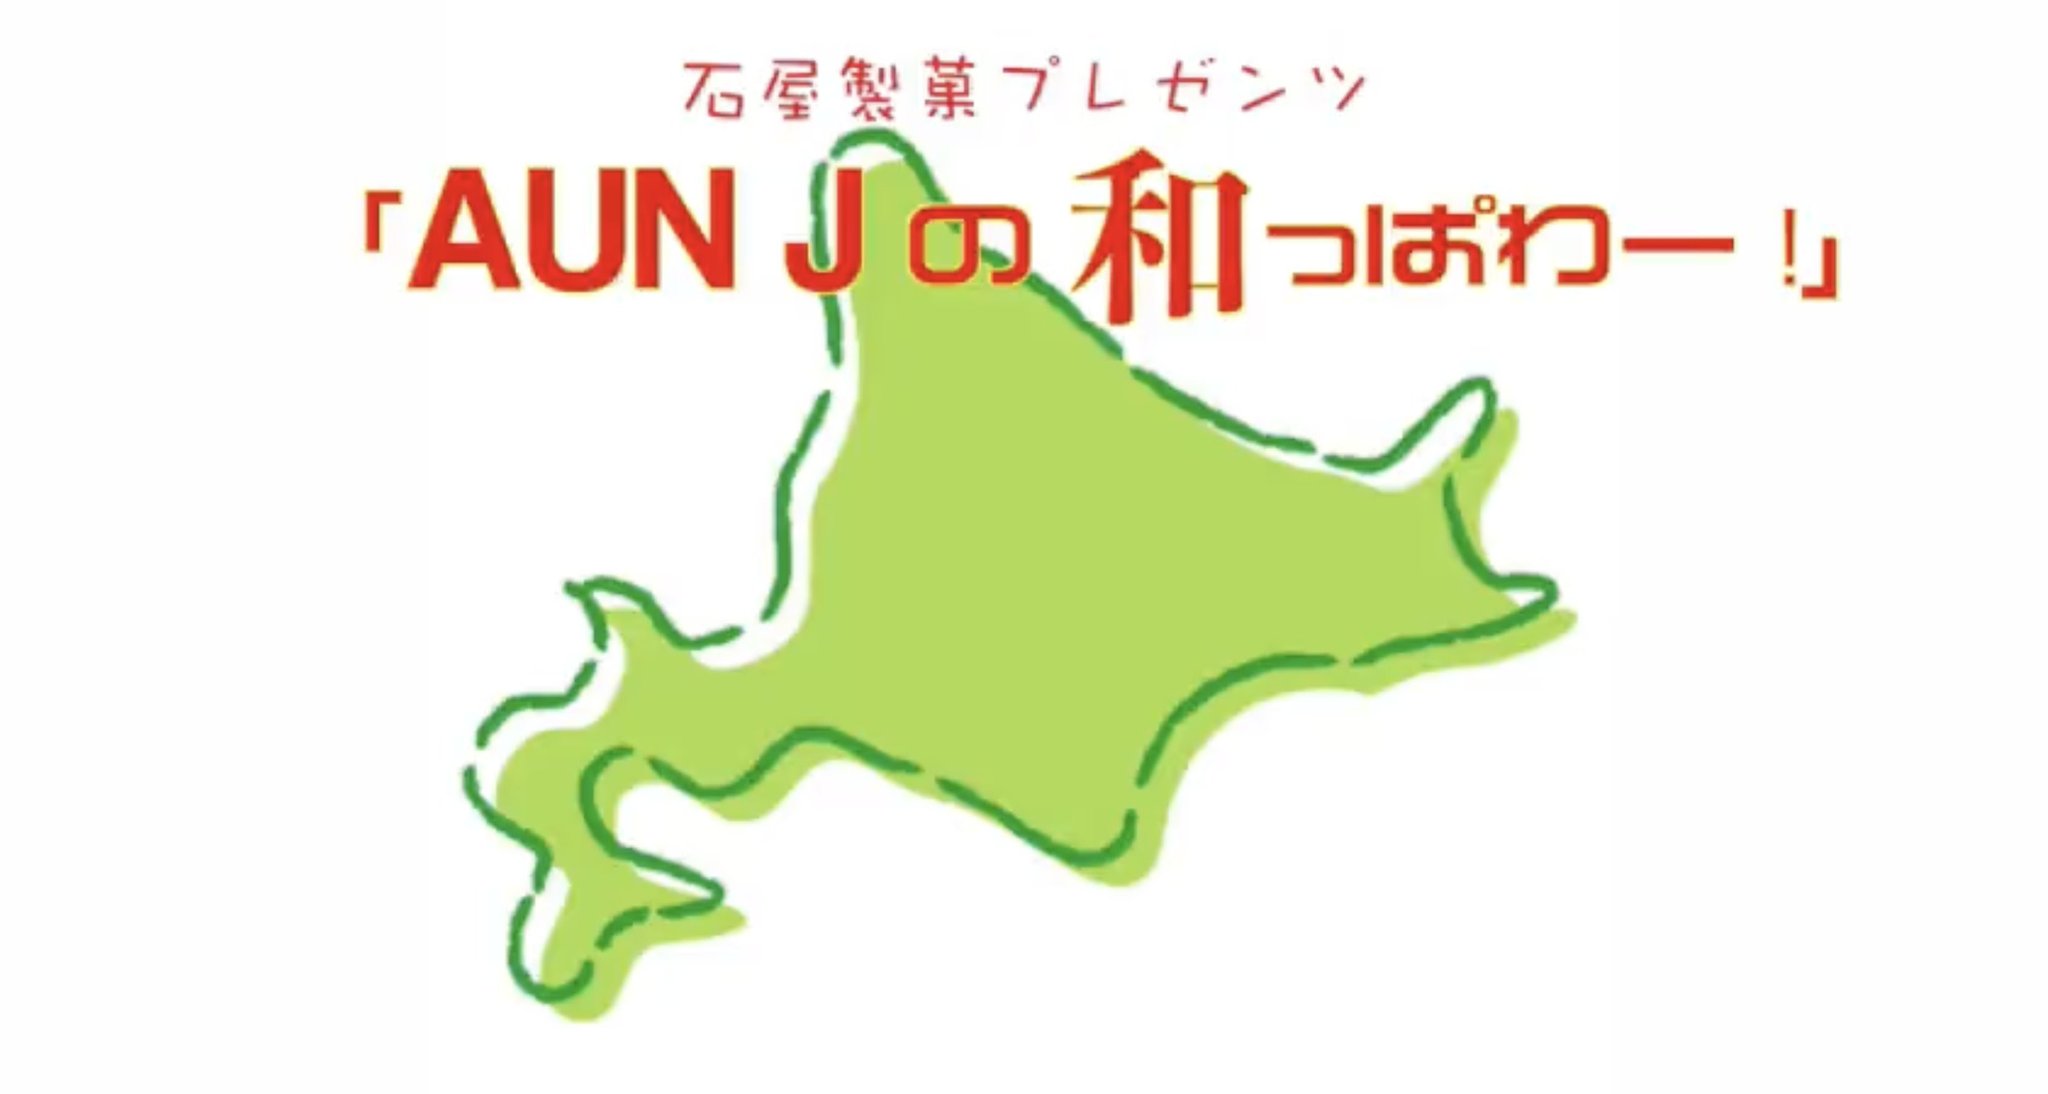 【北海道】札幌三角山放送局“AUN Jの和っパワー!”【公開収録】